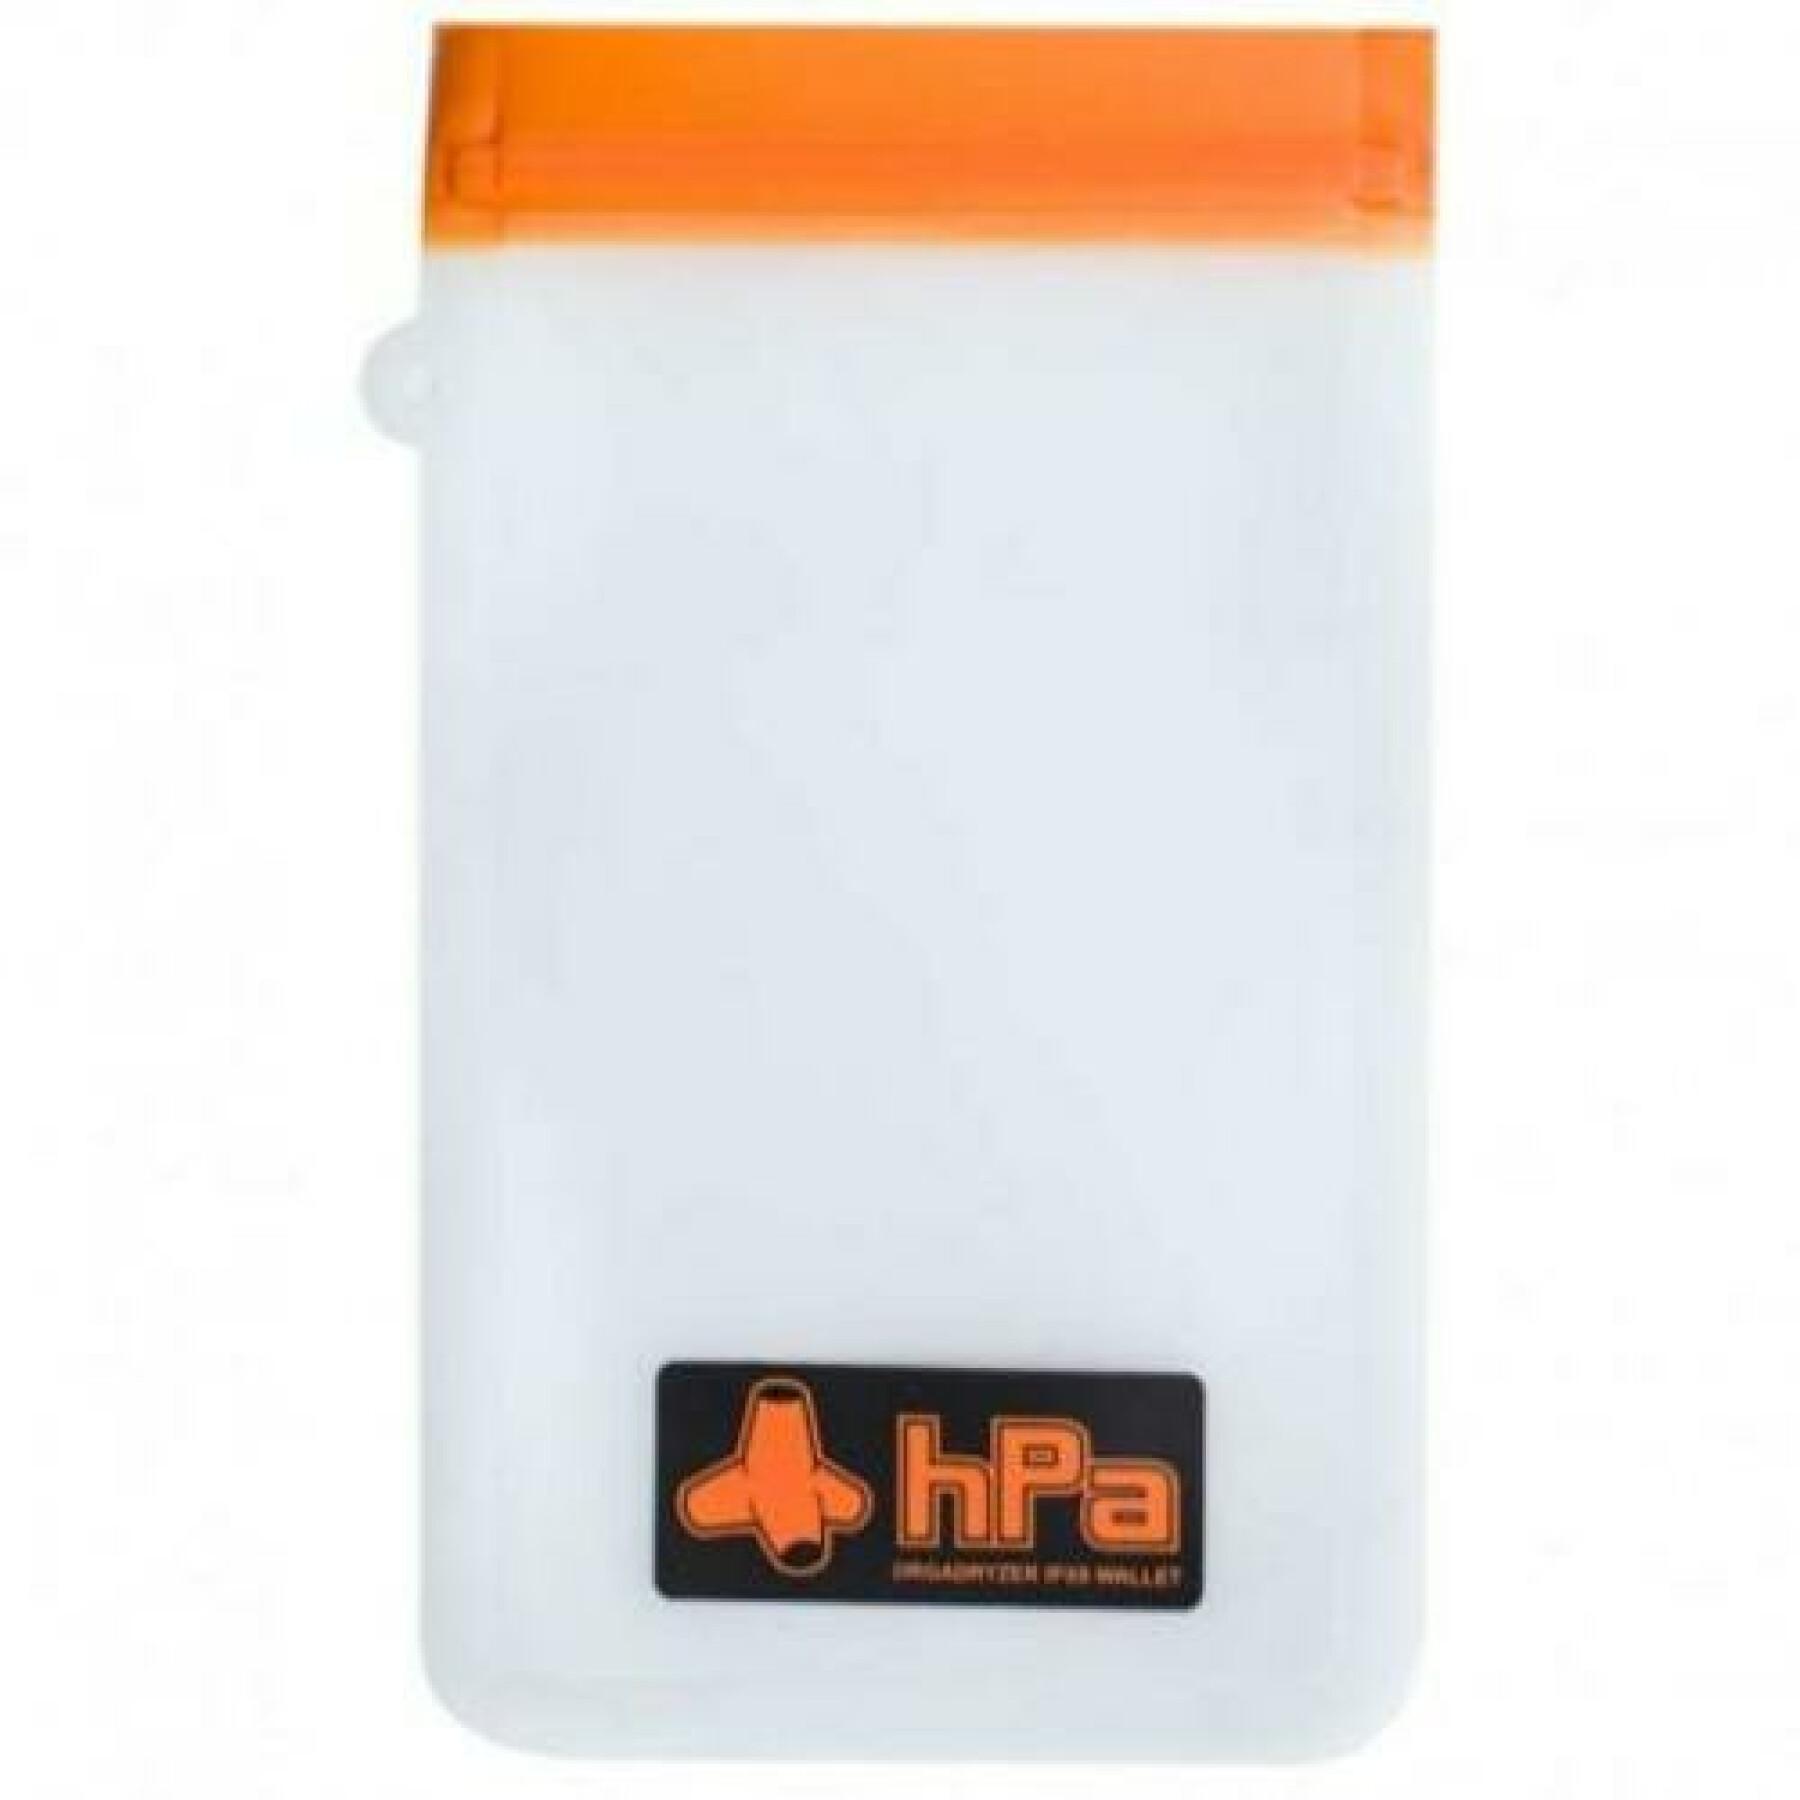 Pacchetto di 3 tasche impermeabili per smartphone Hpa orgadryzer